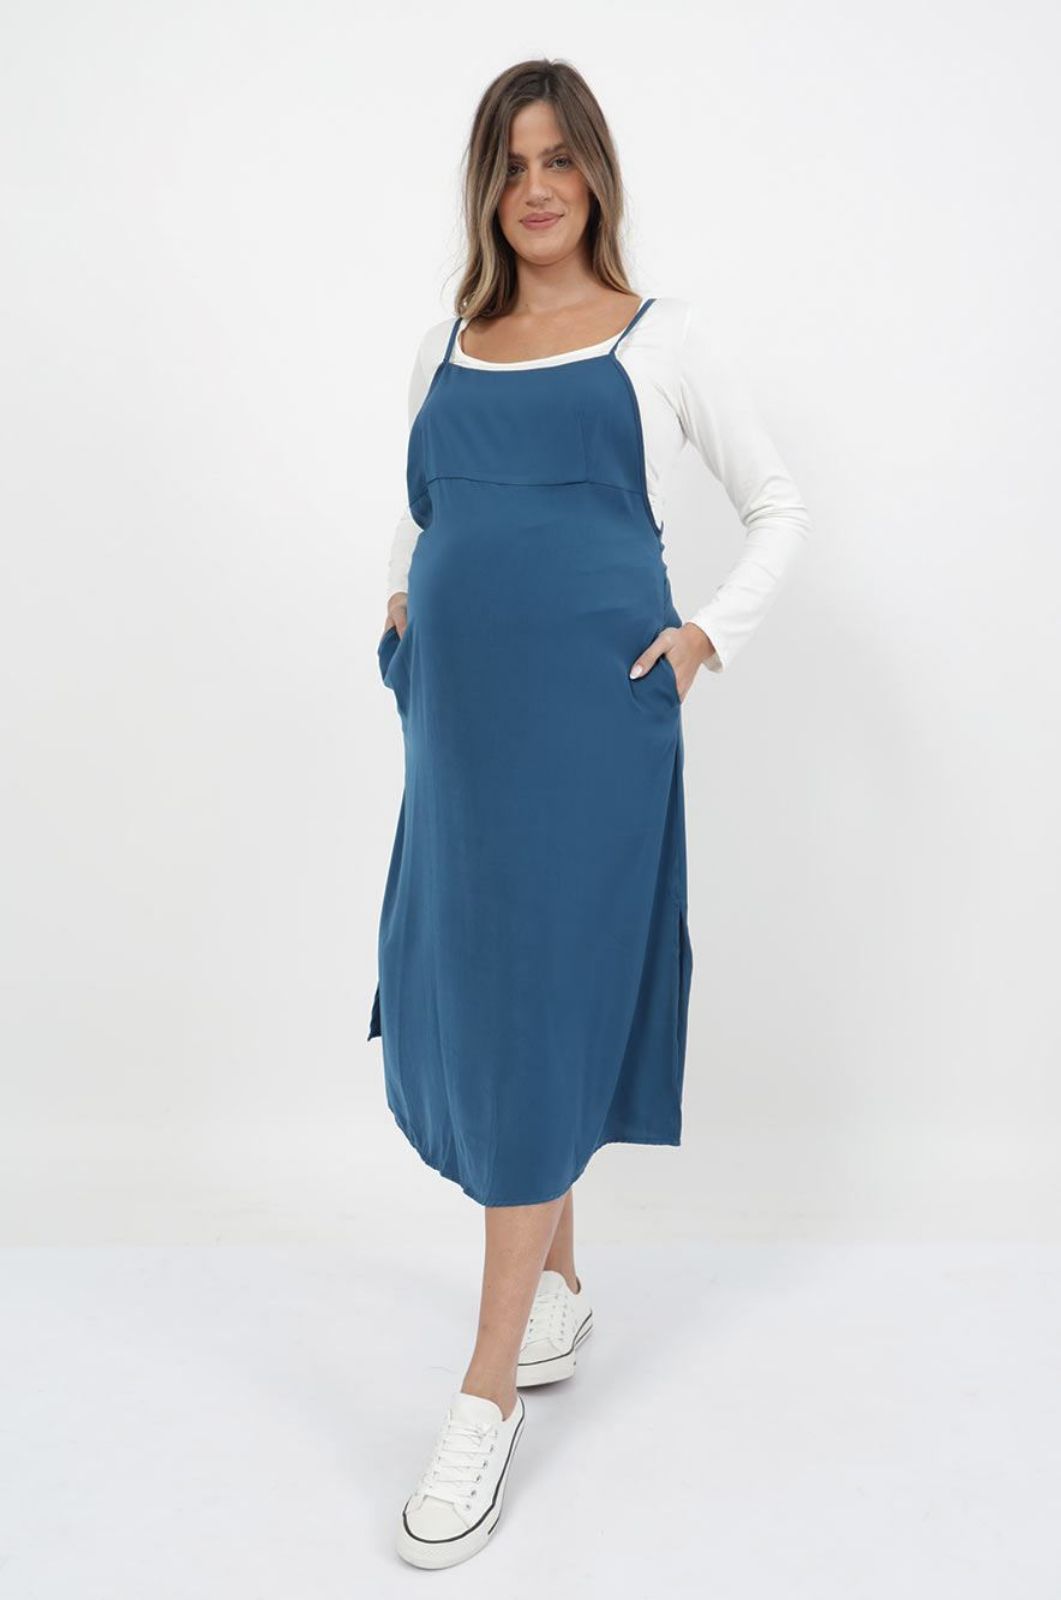 אישה לובשת סרפן להריון מאי כחול של אבישג ארבל	